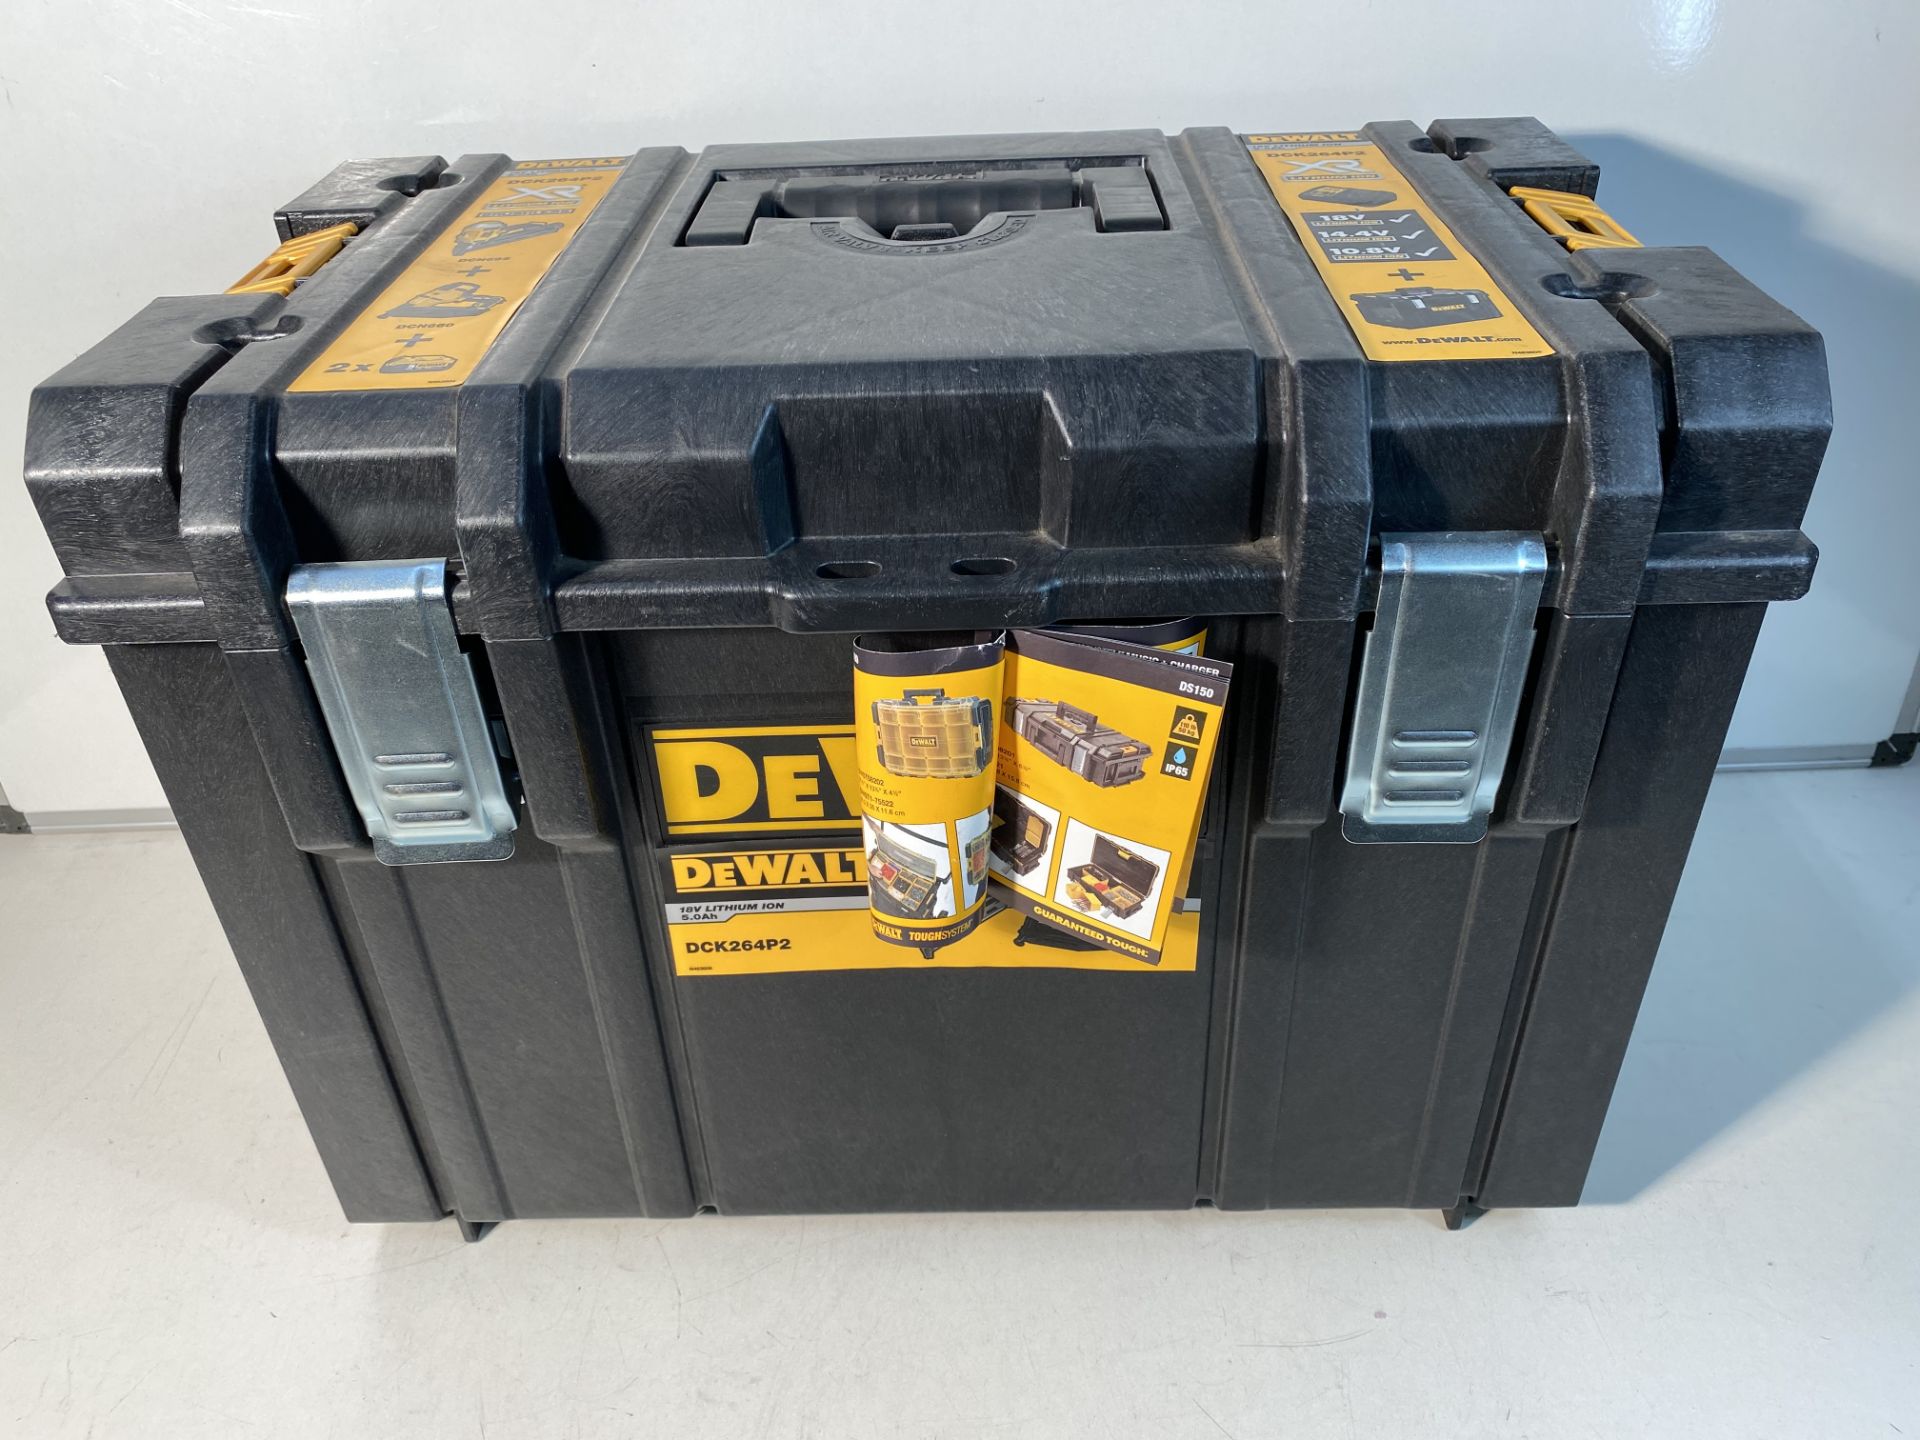 Case for DeWalt DCK264P2 18v 2x5.0Ah Li-ion XR 1st and 2nd Fix Nailer Twin Kit TSTAK CASE ONLY!